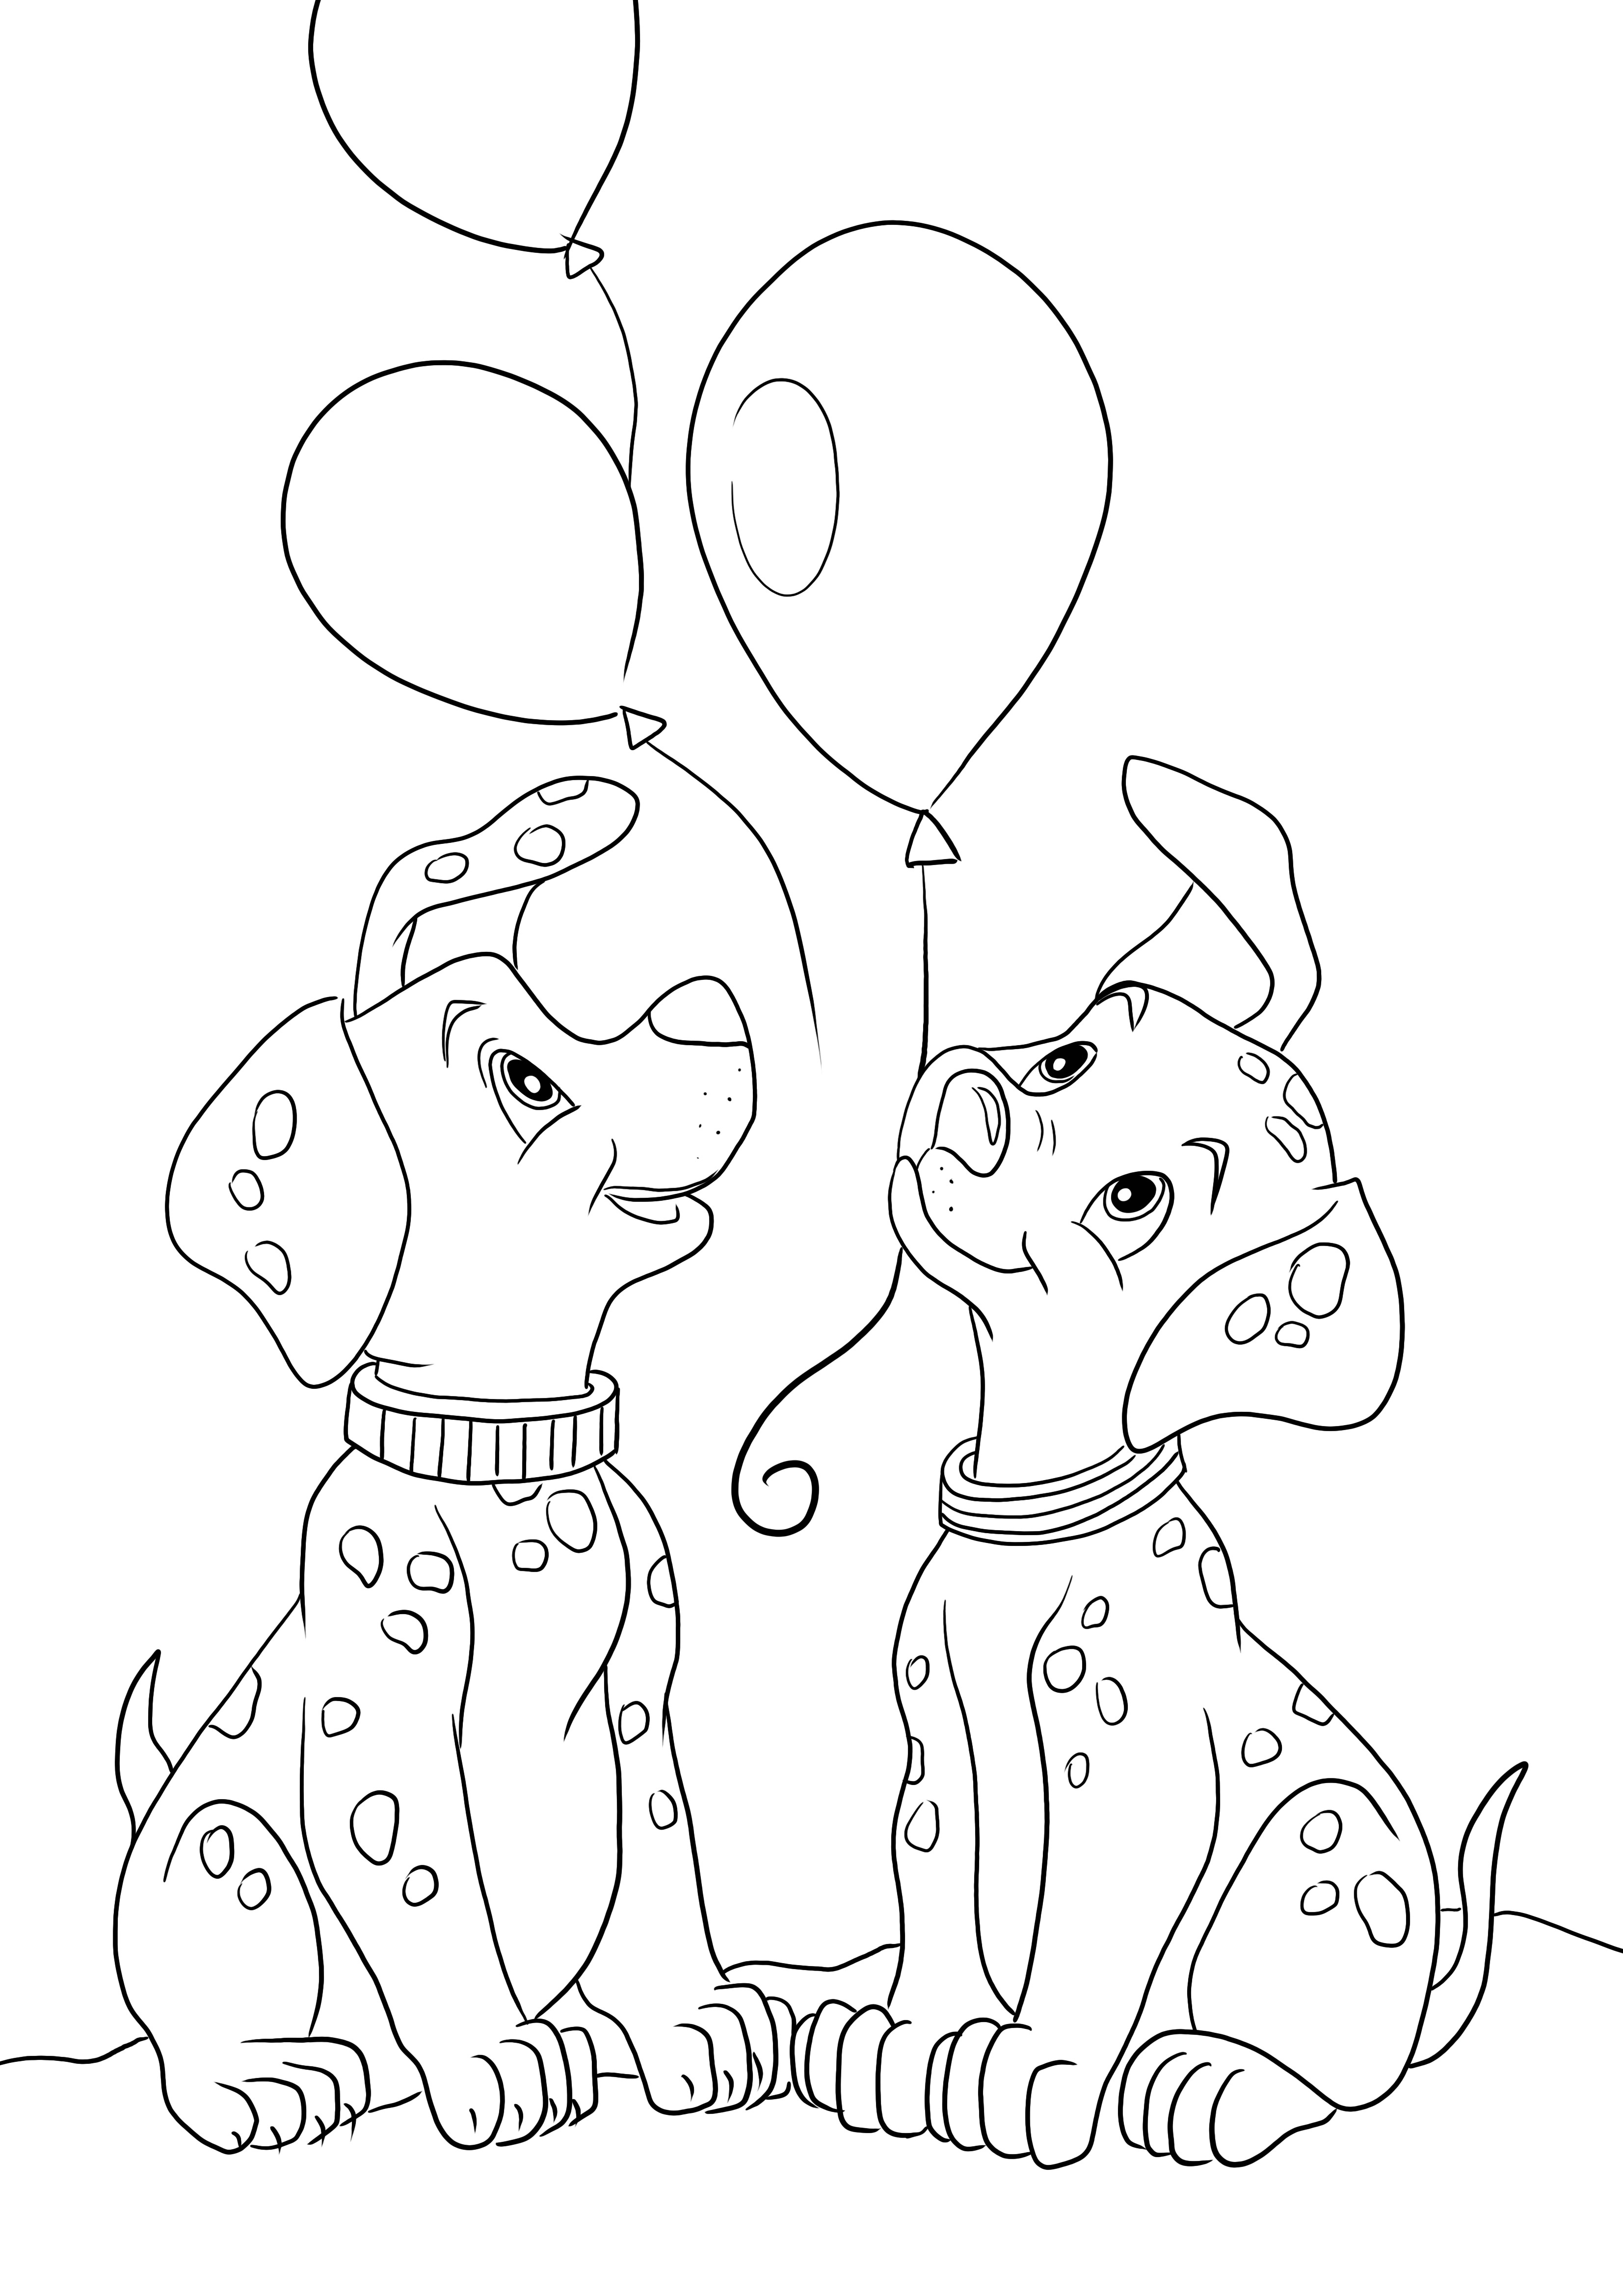 Tambalan dan anak anjing Dalmatian Rolly dan bebas balon dapat dicetak untuk halaman mewarnai yang mudah